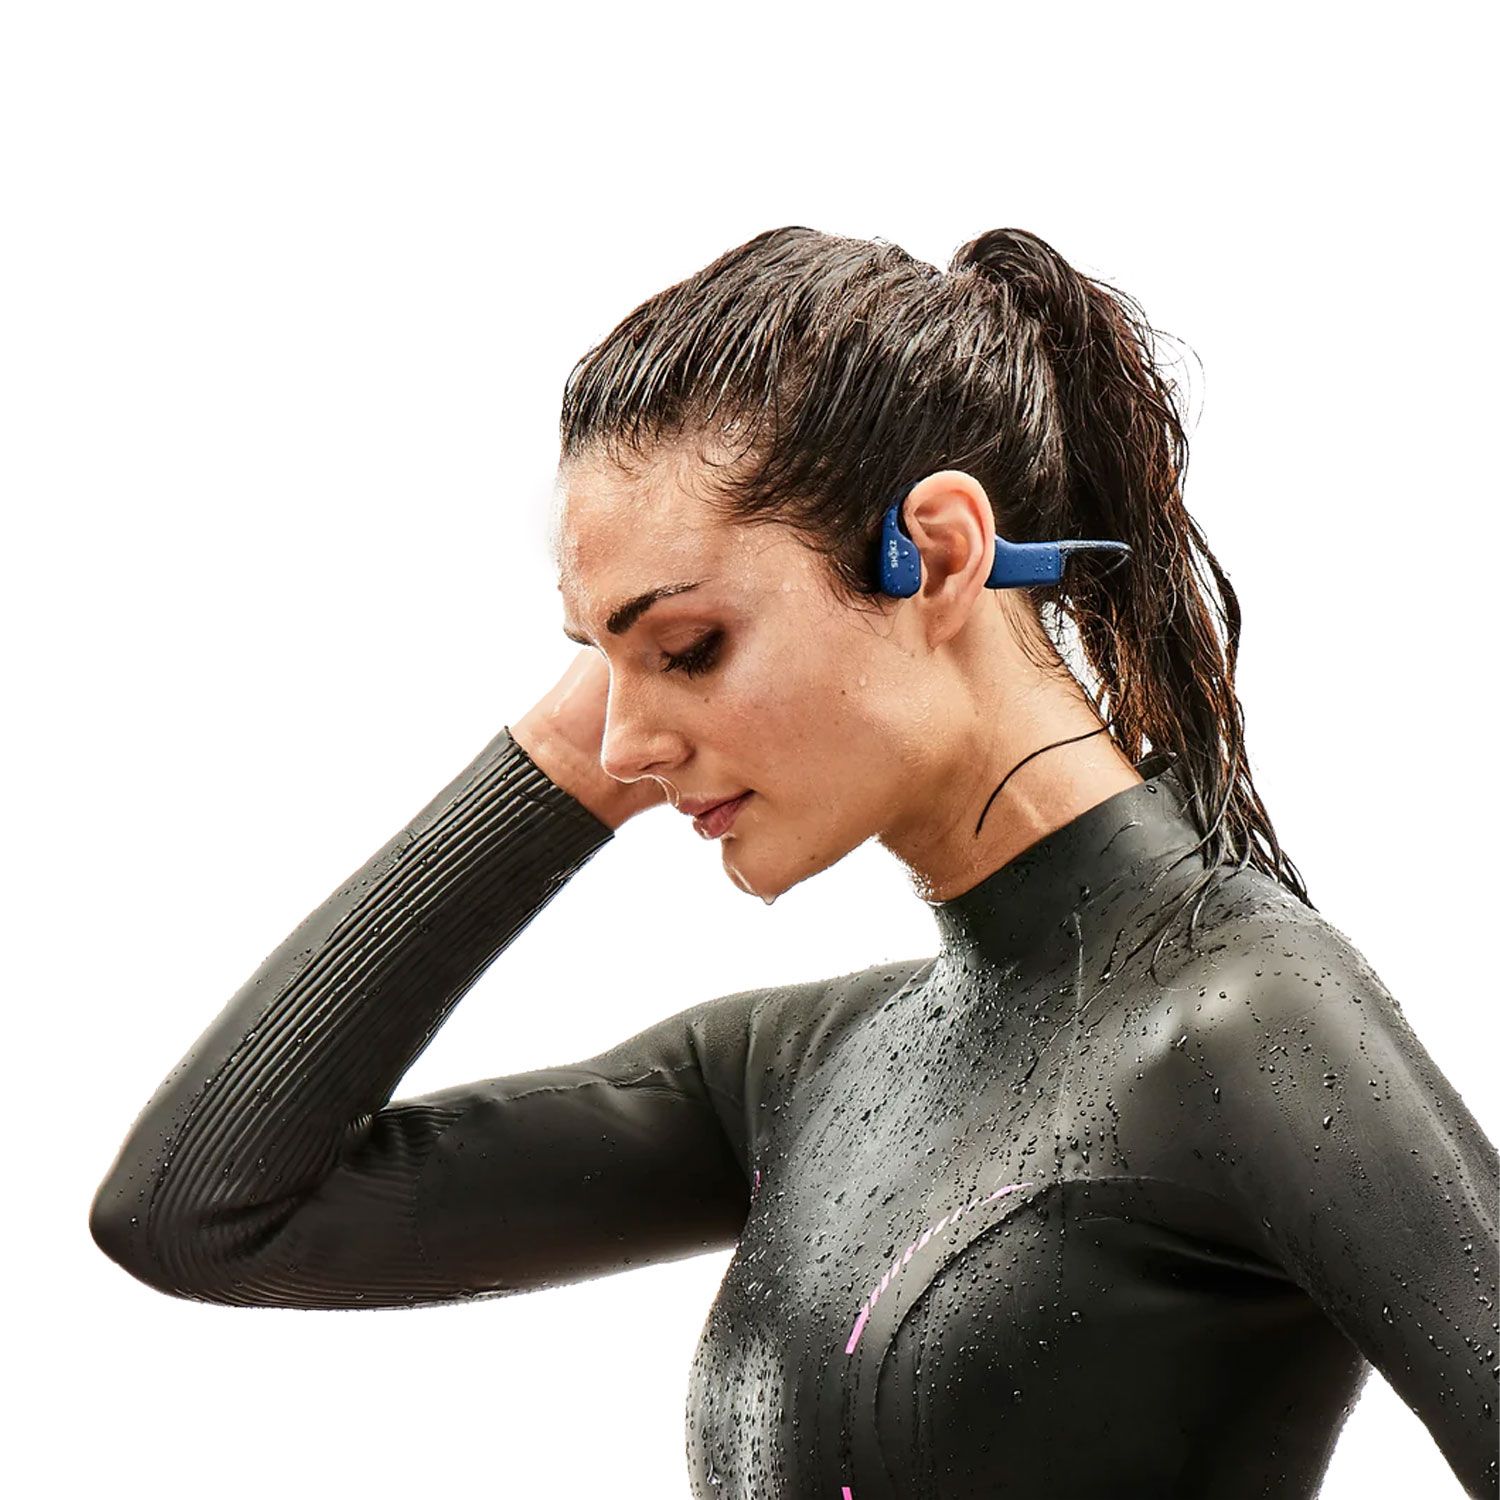 OpenSwim Waterproof Swimming Headphone - Shokz UK